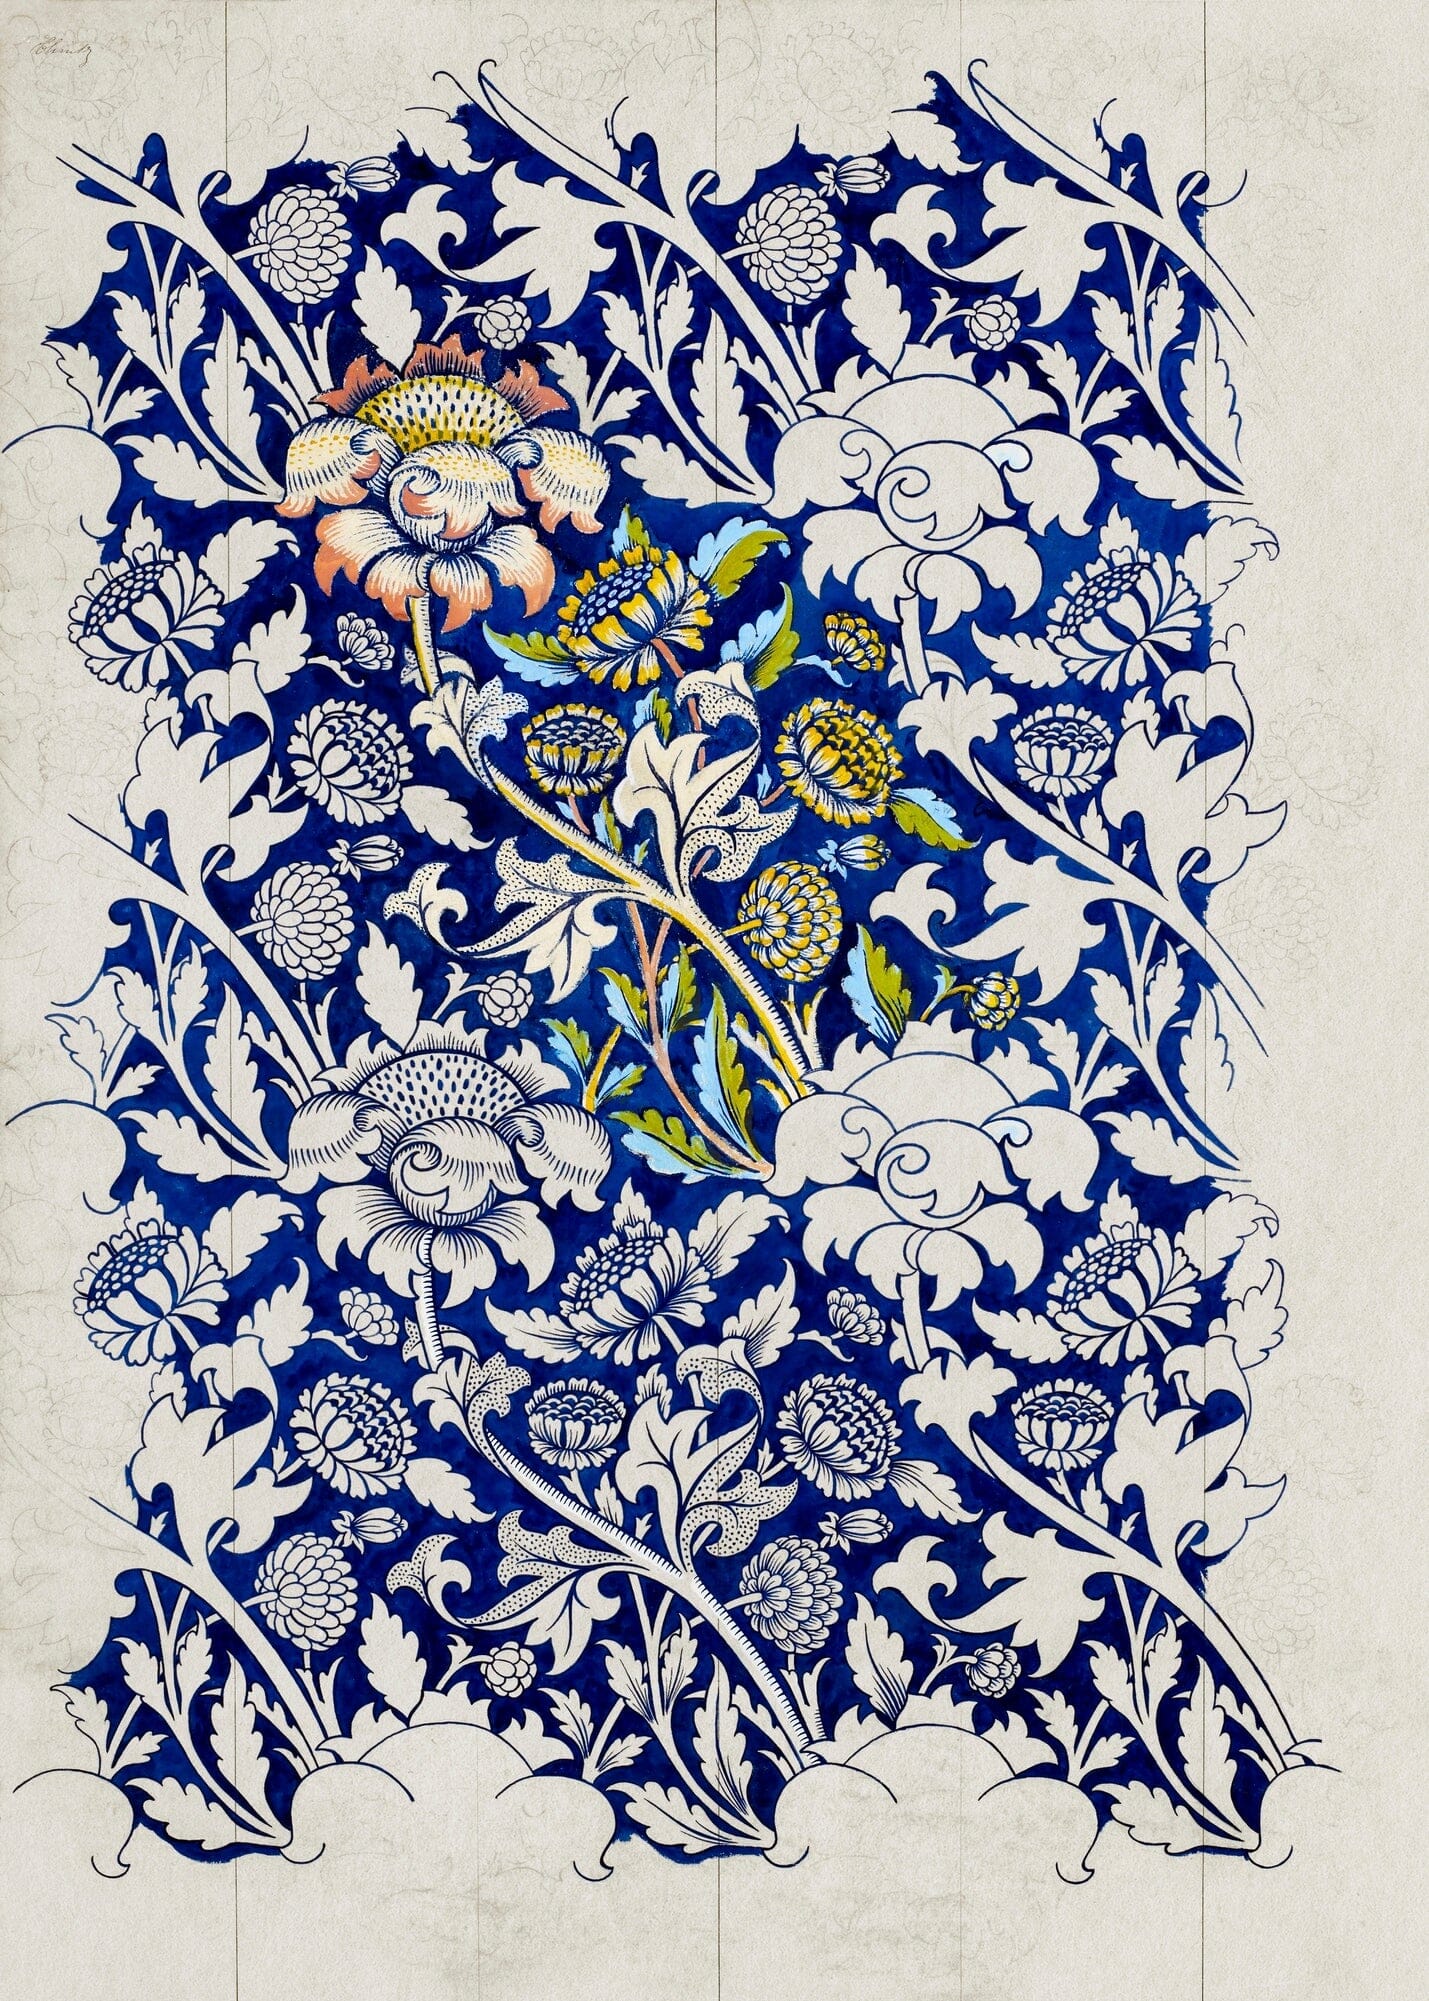 Wey design (1880s)  William Morris prints – The Trumpet Shop Vintage Prints